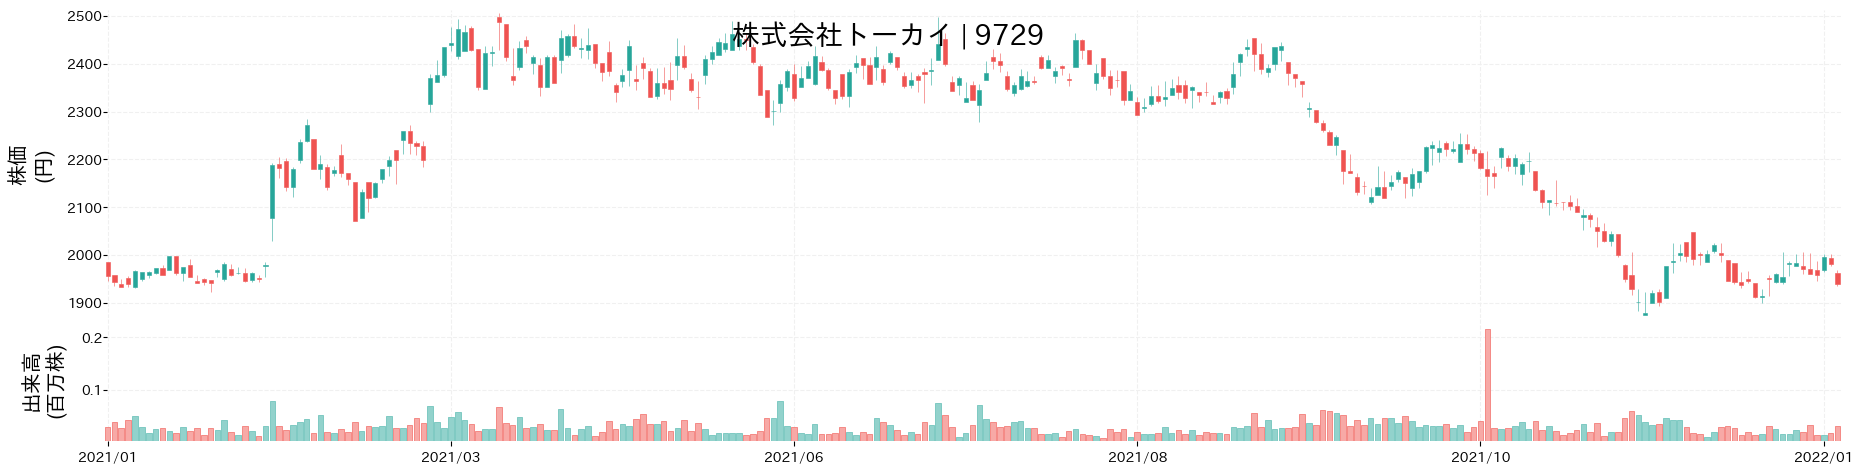 トーカイの株価推移(2021)